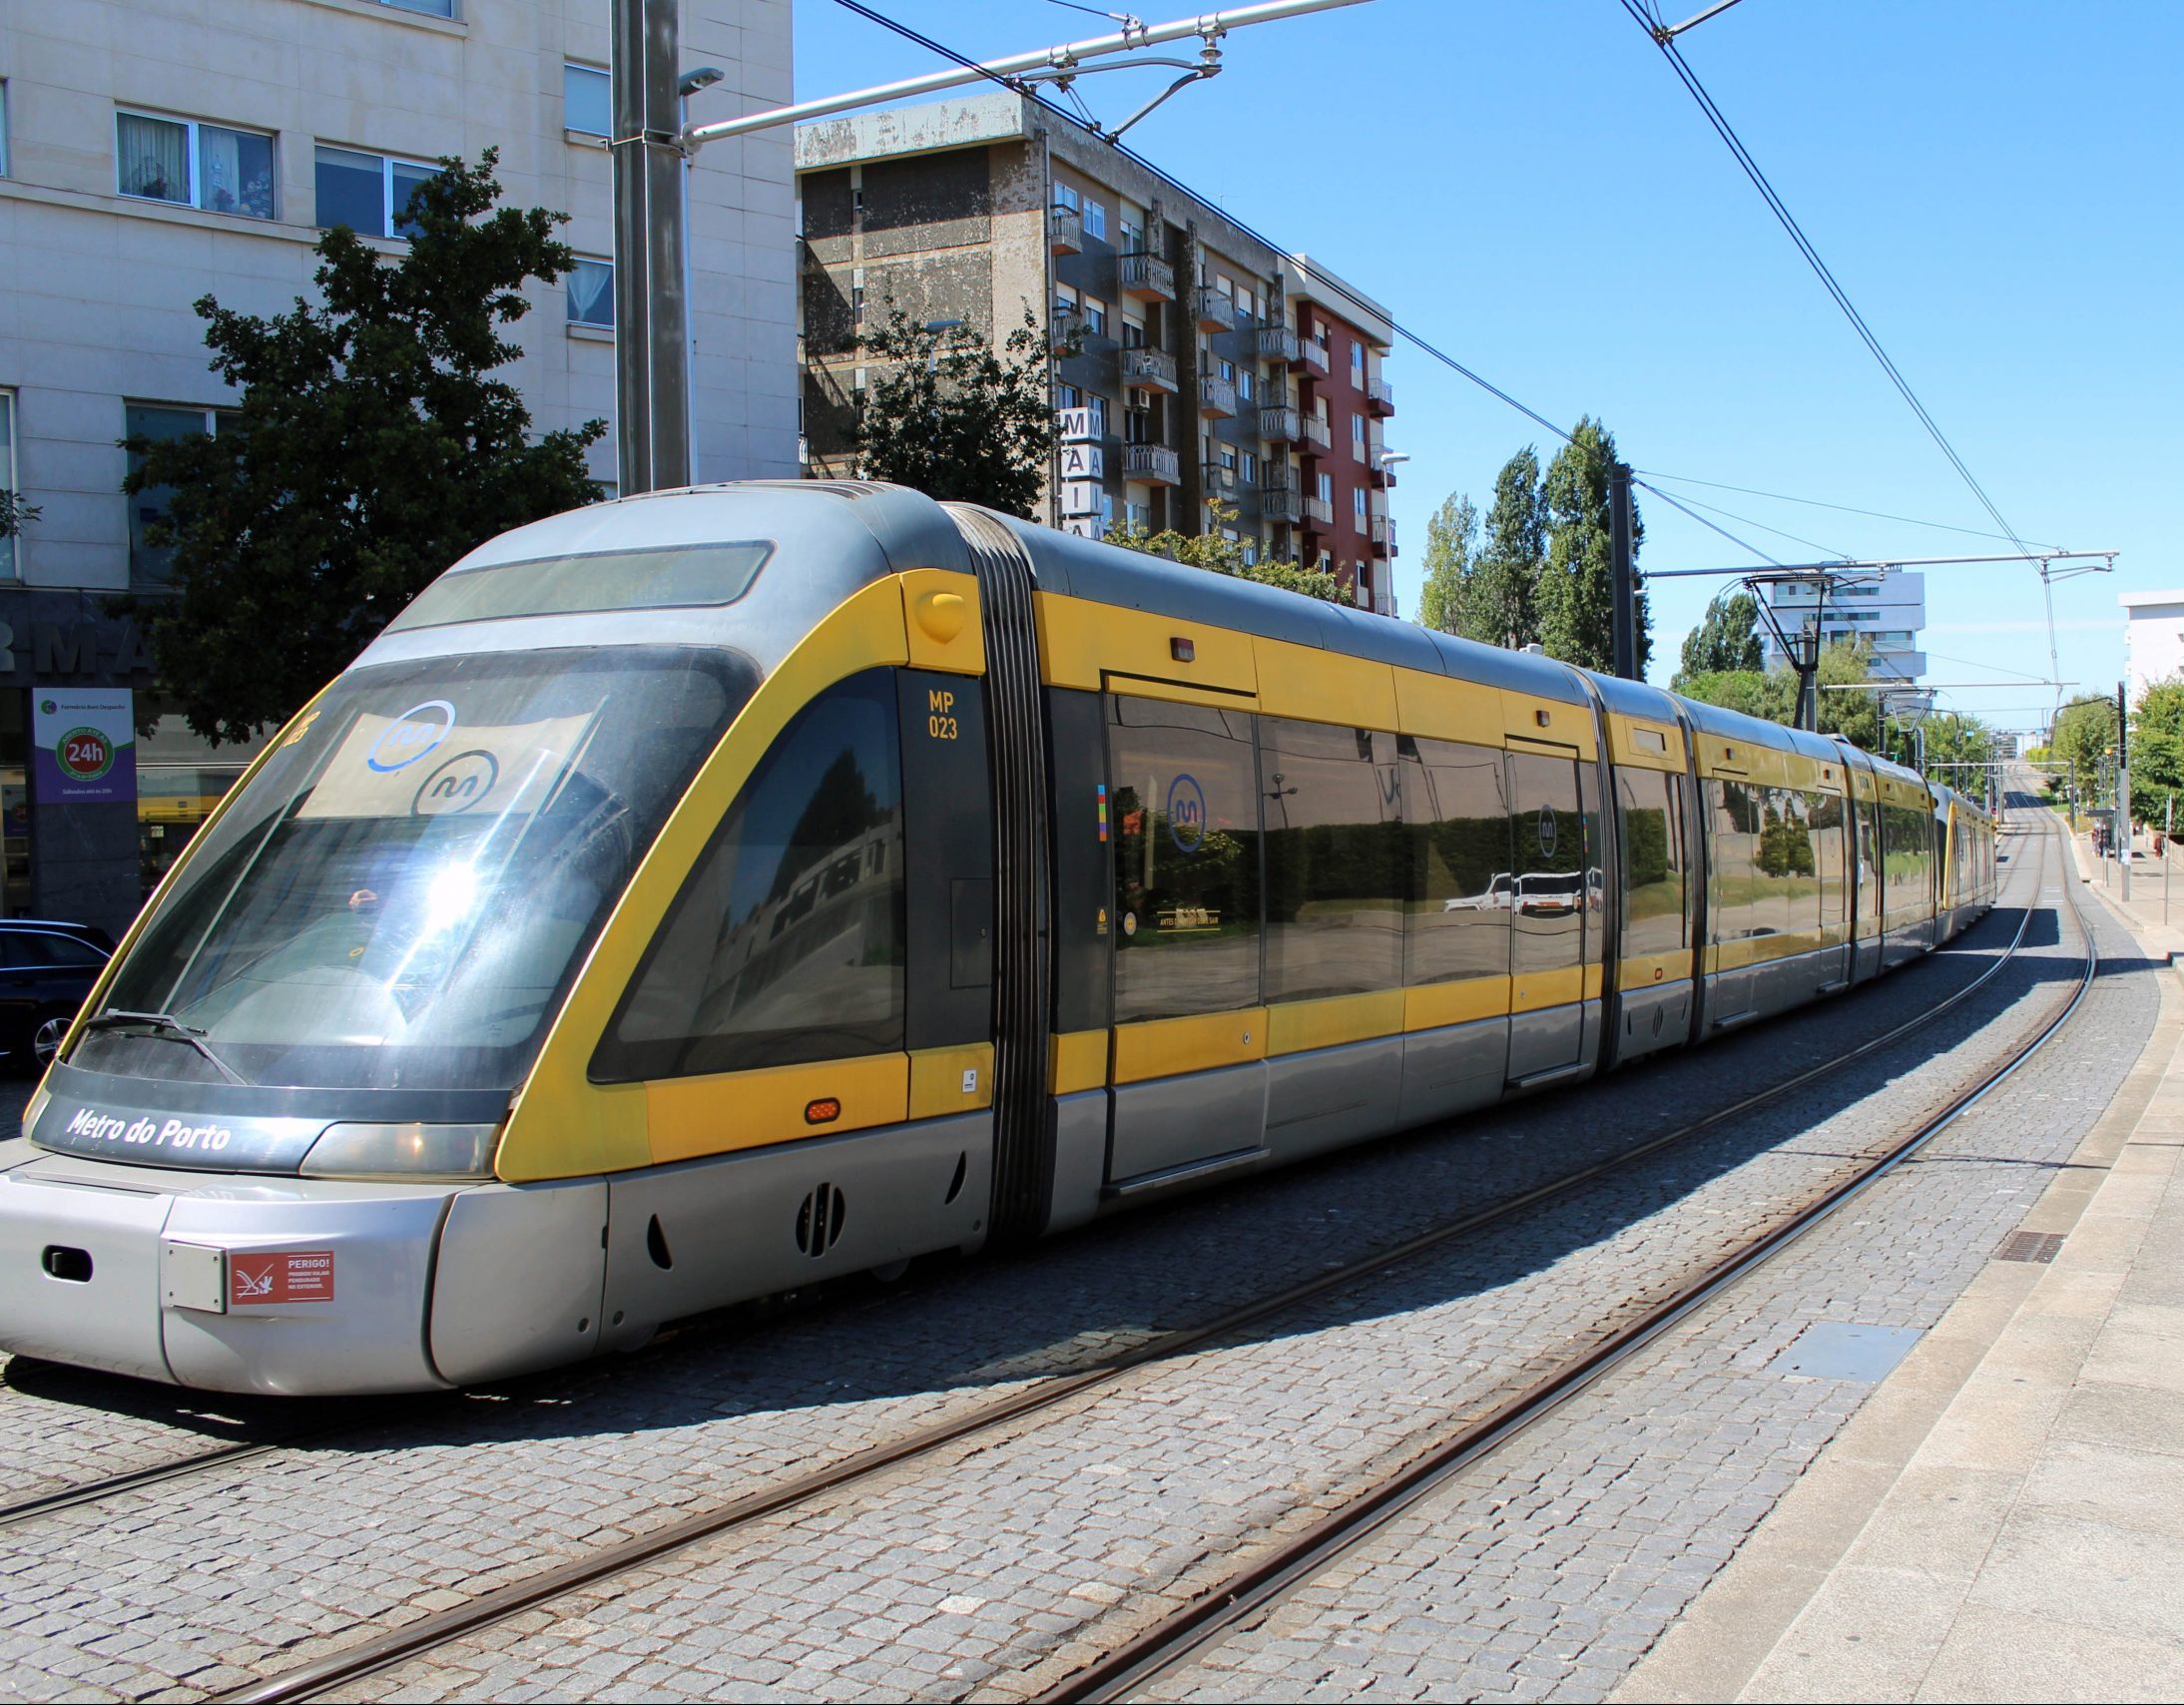 Metro do Porto adquire 18 novas composições por 49,6 milhões de euros